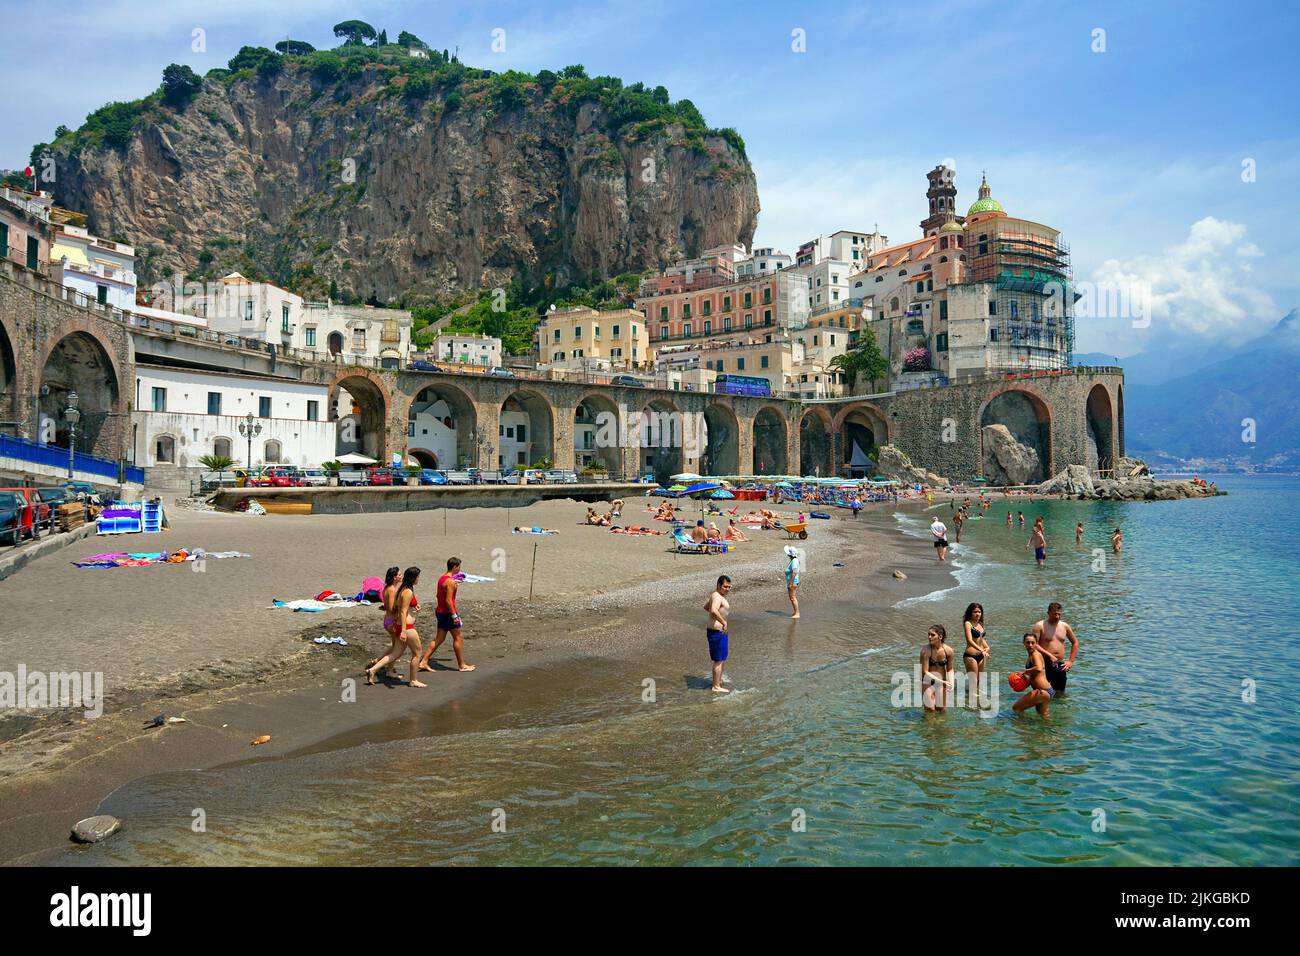 Plage du village d'Atrani, côte amalfitaine, site classé au patrimoine mondial de l'UNESCO, Campanie, Italie, Europe Banque D'Images